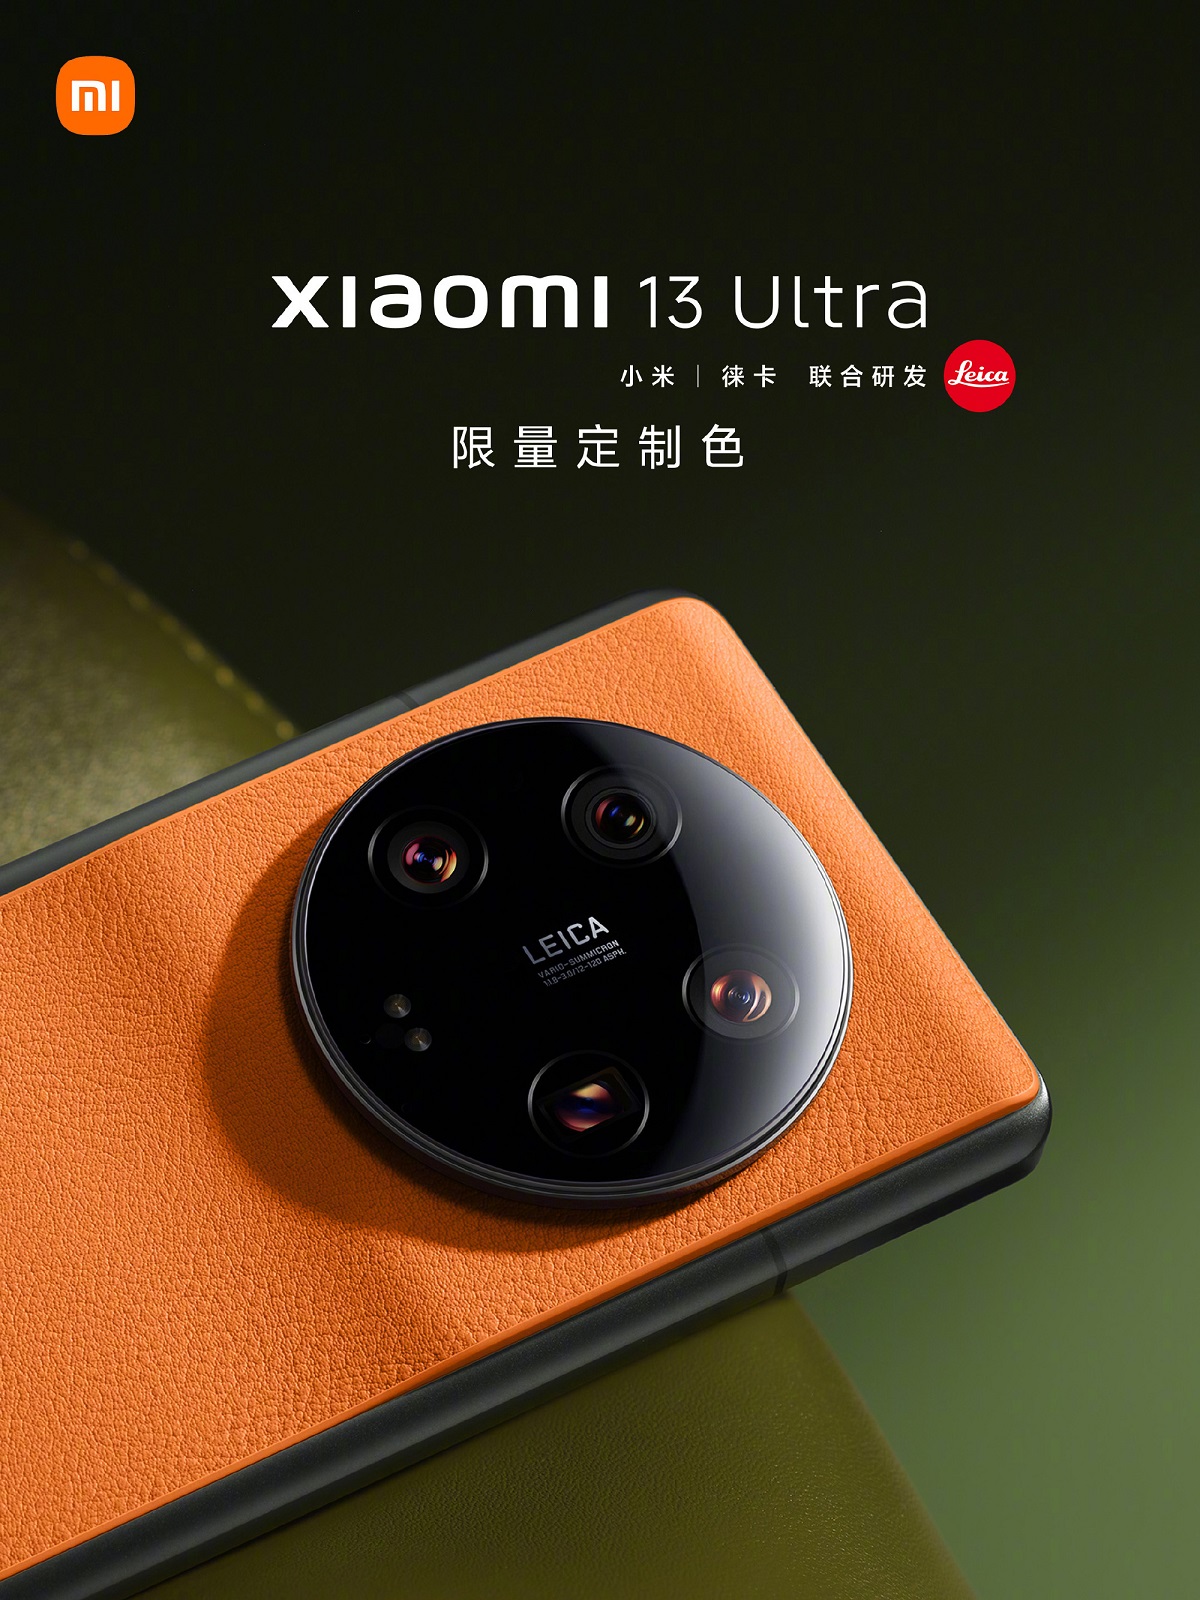 лимитированная серия Xiaomi 13 Ultra